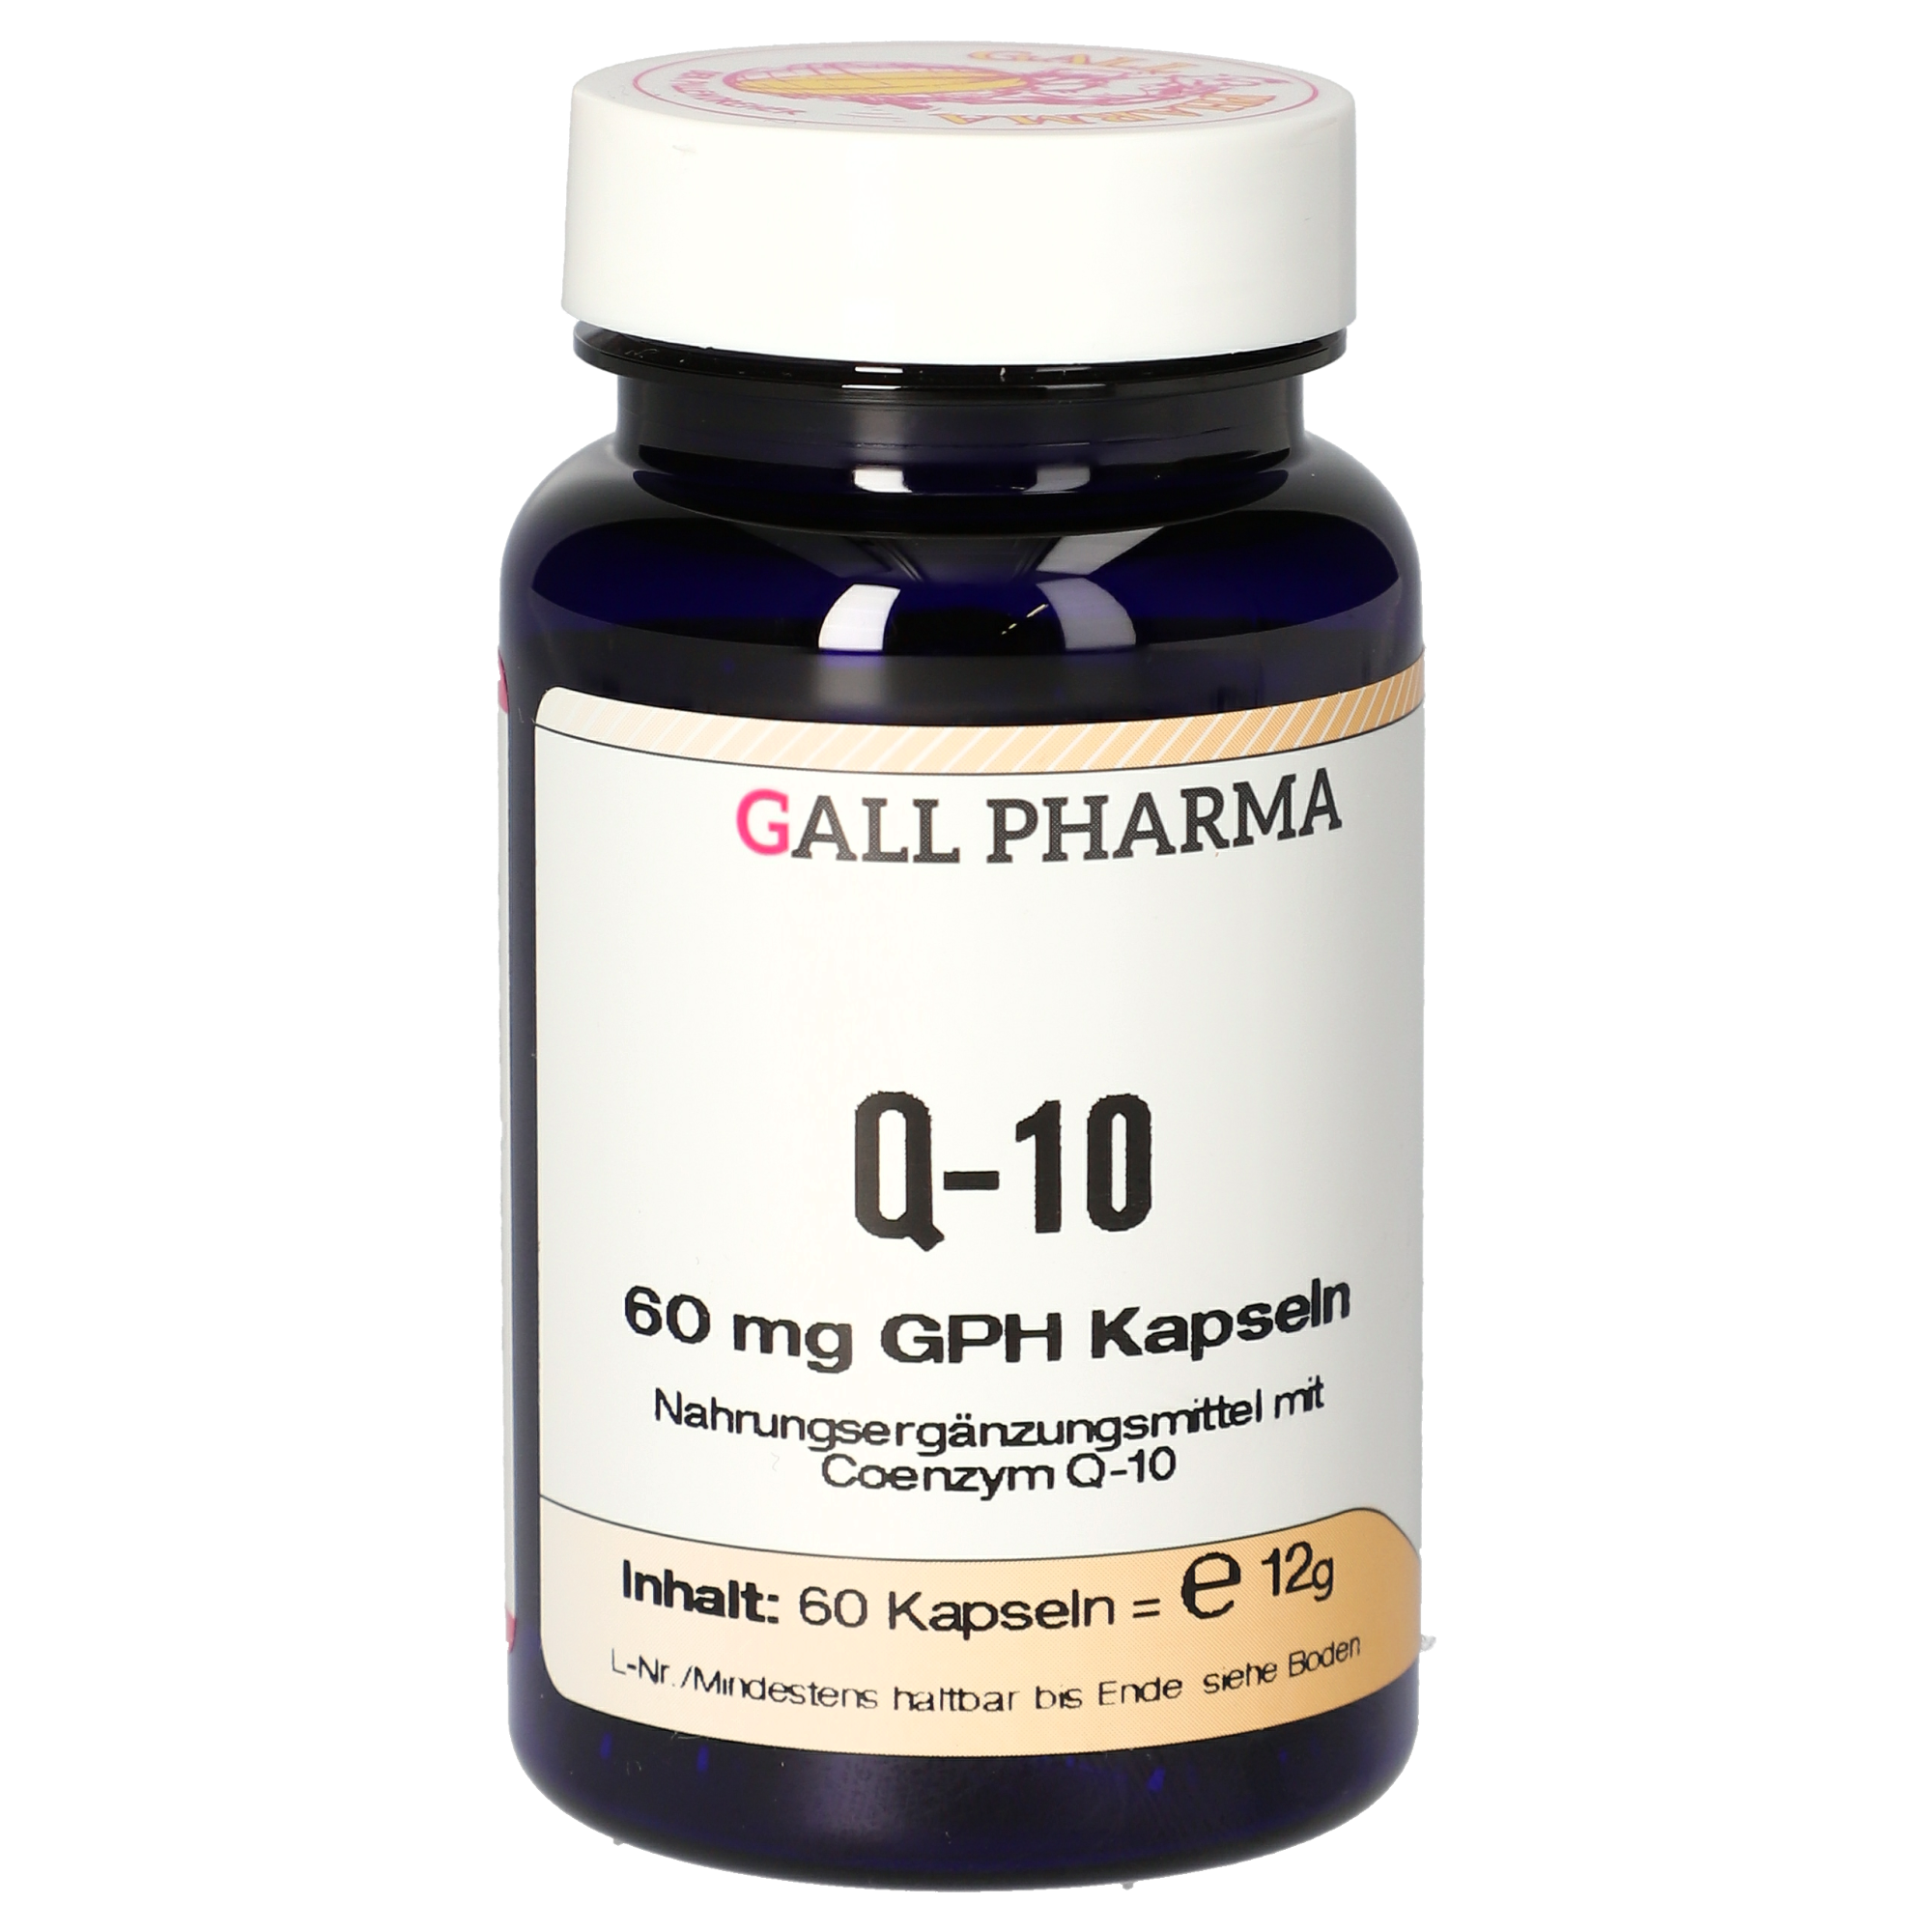 Q-10 60 mg GPH Kapseln